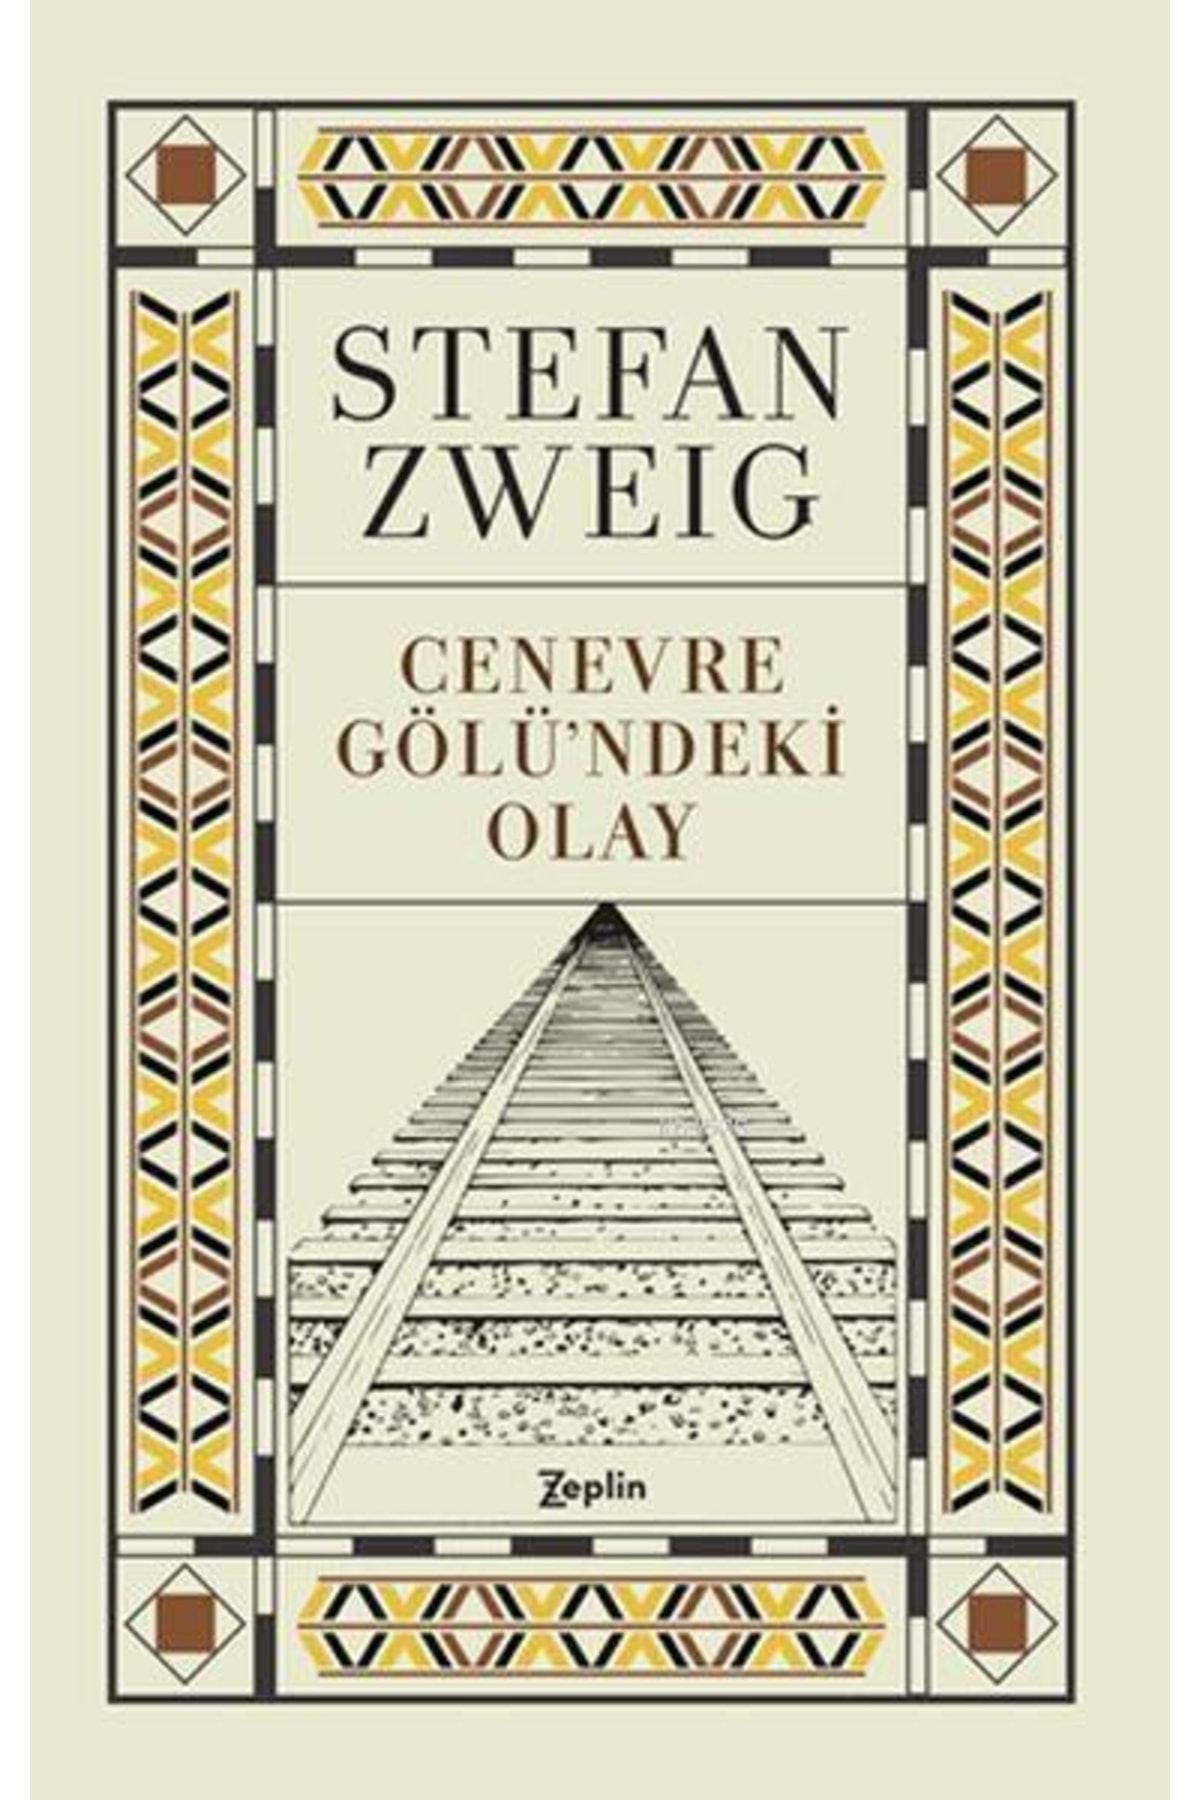 Zeplin Kitap Cenevre Gölü'ndeki Olay - Kitap - Stefan Zweig